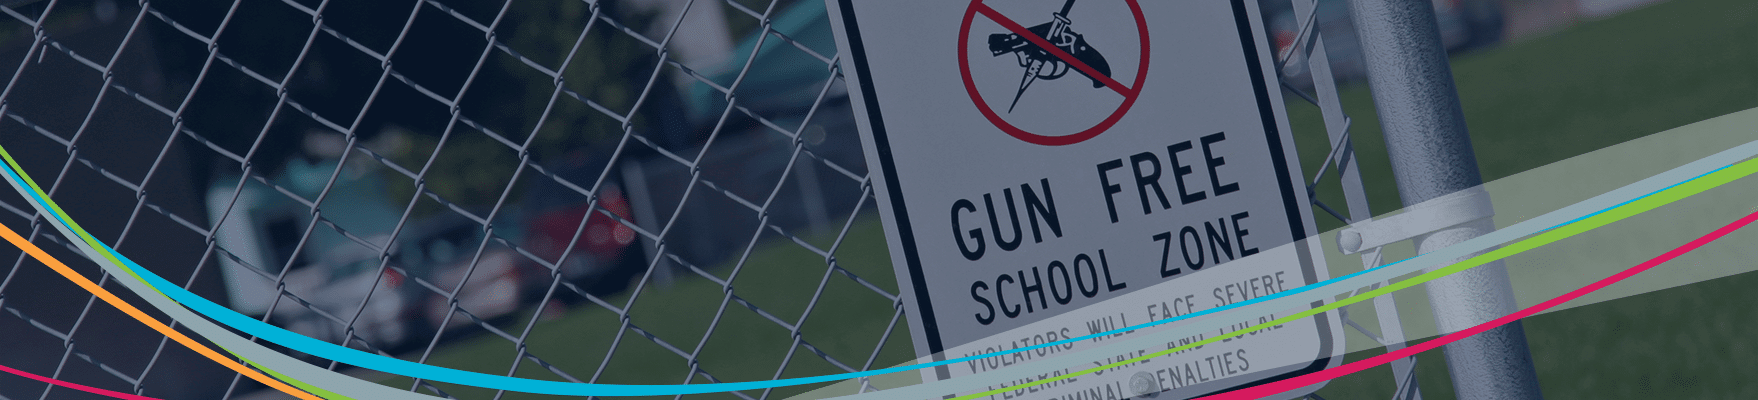 Sinal de zona livre de armas em cima do muro Cabeçalho de prevenção de violência escolar